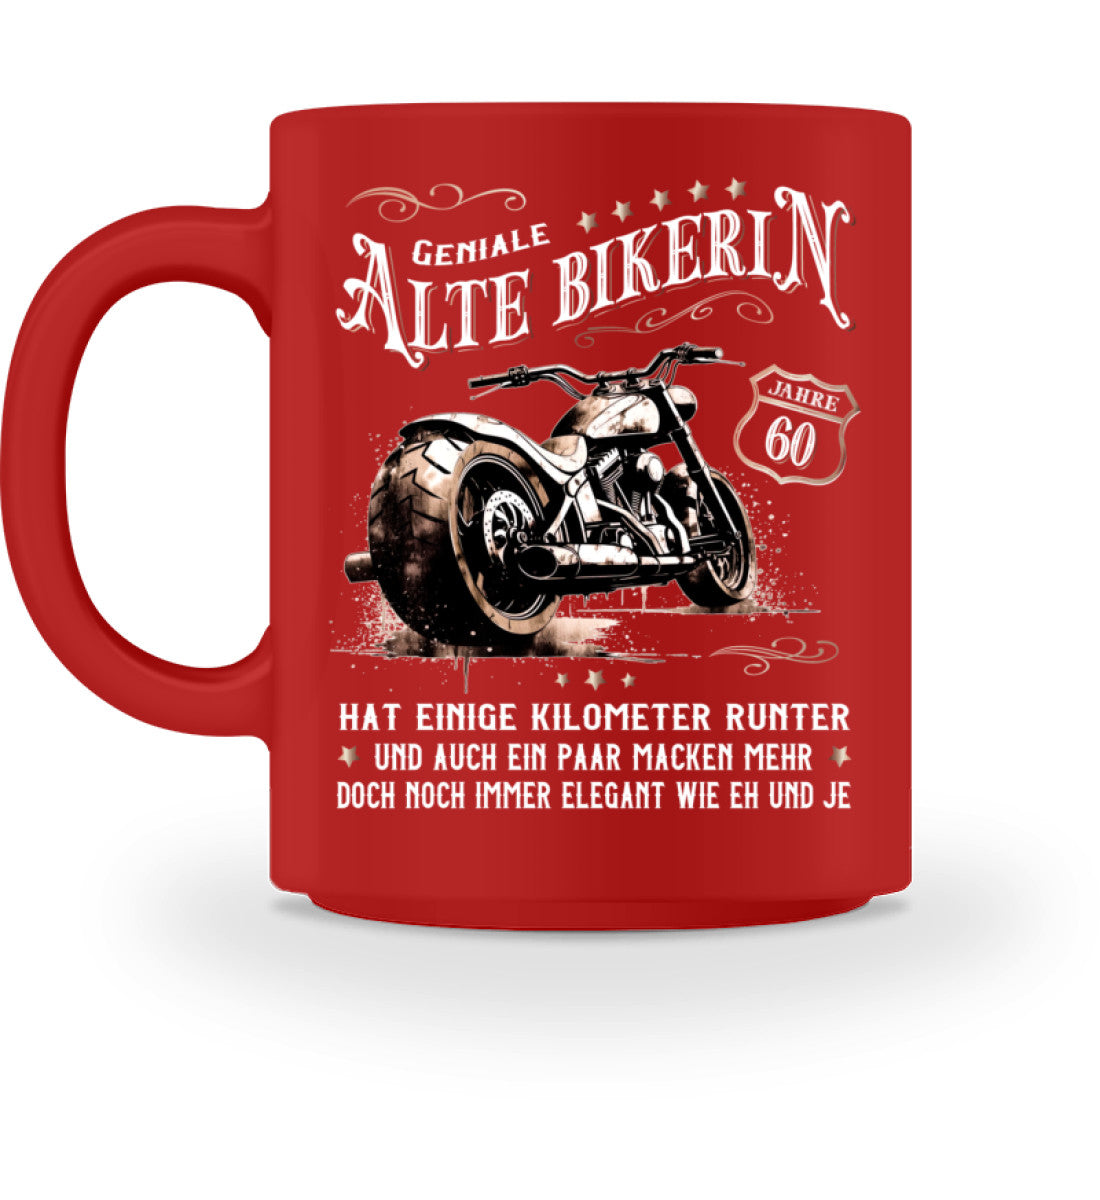 Eine Bikerin Geburtstags-Tasse für Motorradfahrerinnen, von Wingbikers, mit dem beidseitigen Aufdruck, Alte Bikerin - 60 Jahre - Einige Kilometer Runter - Doch elegant wie eh und je, in rot.